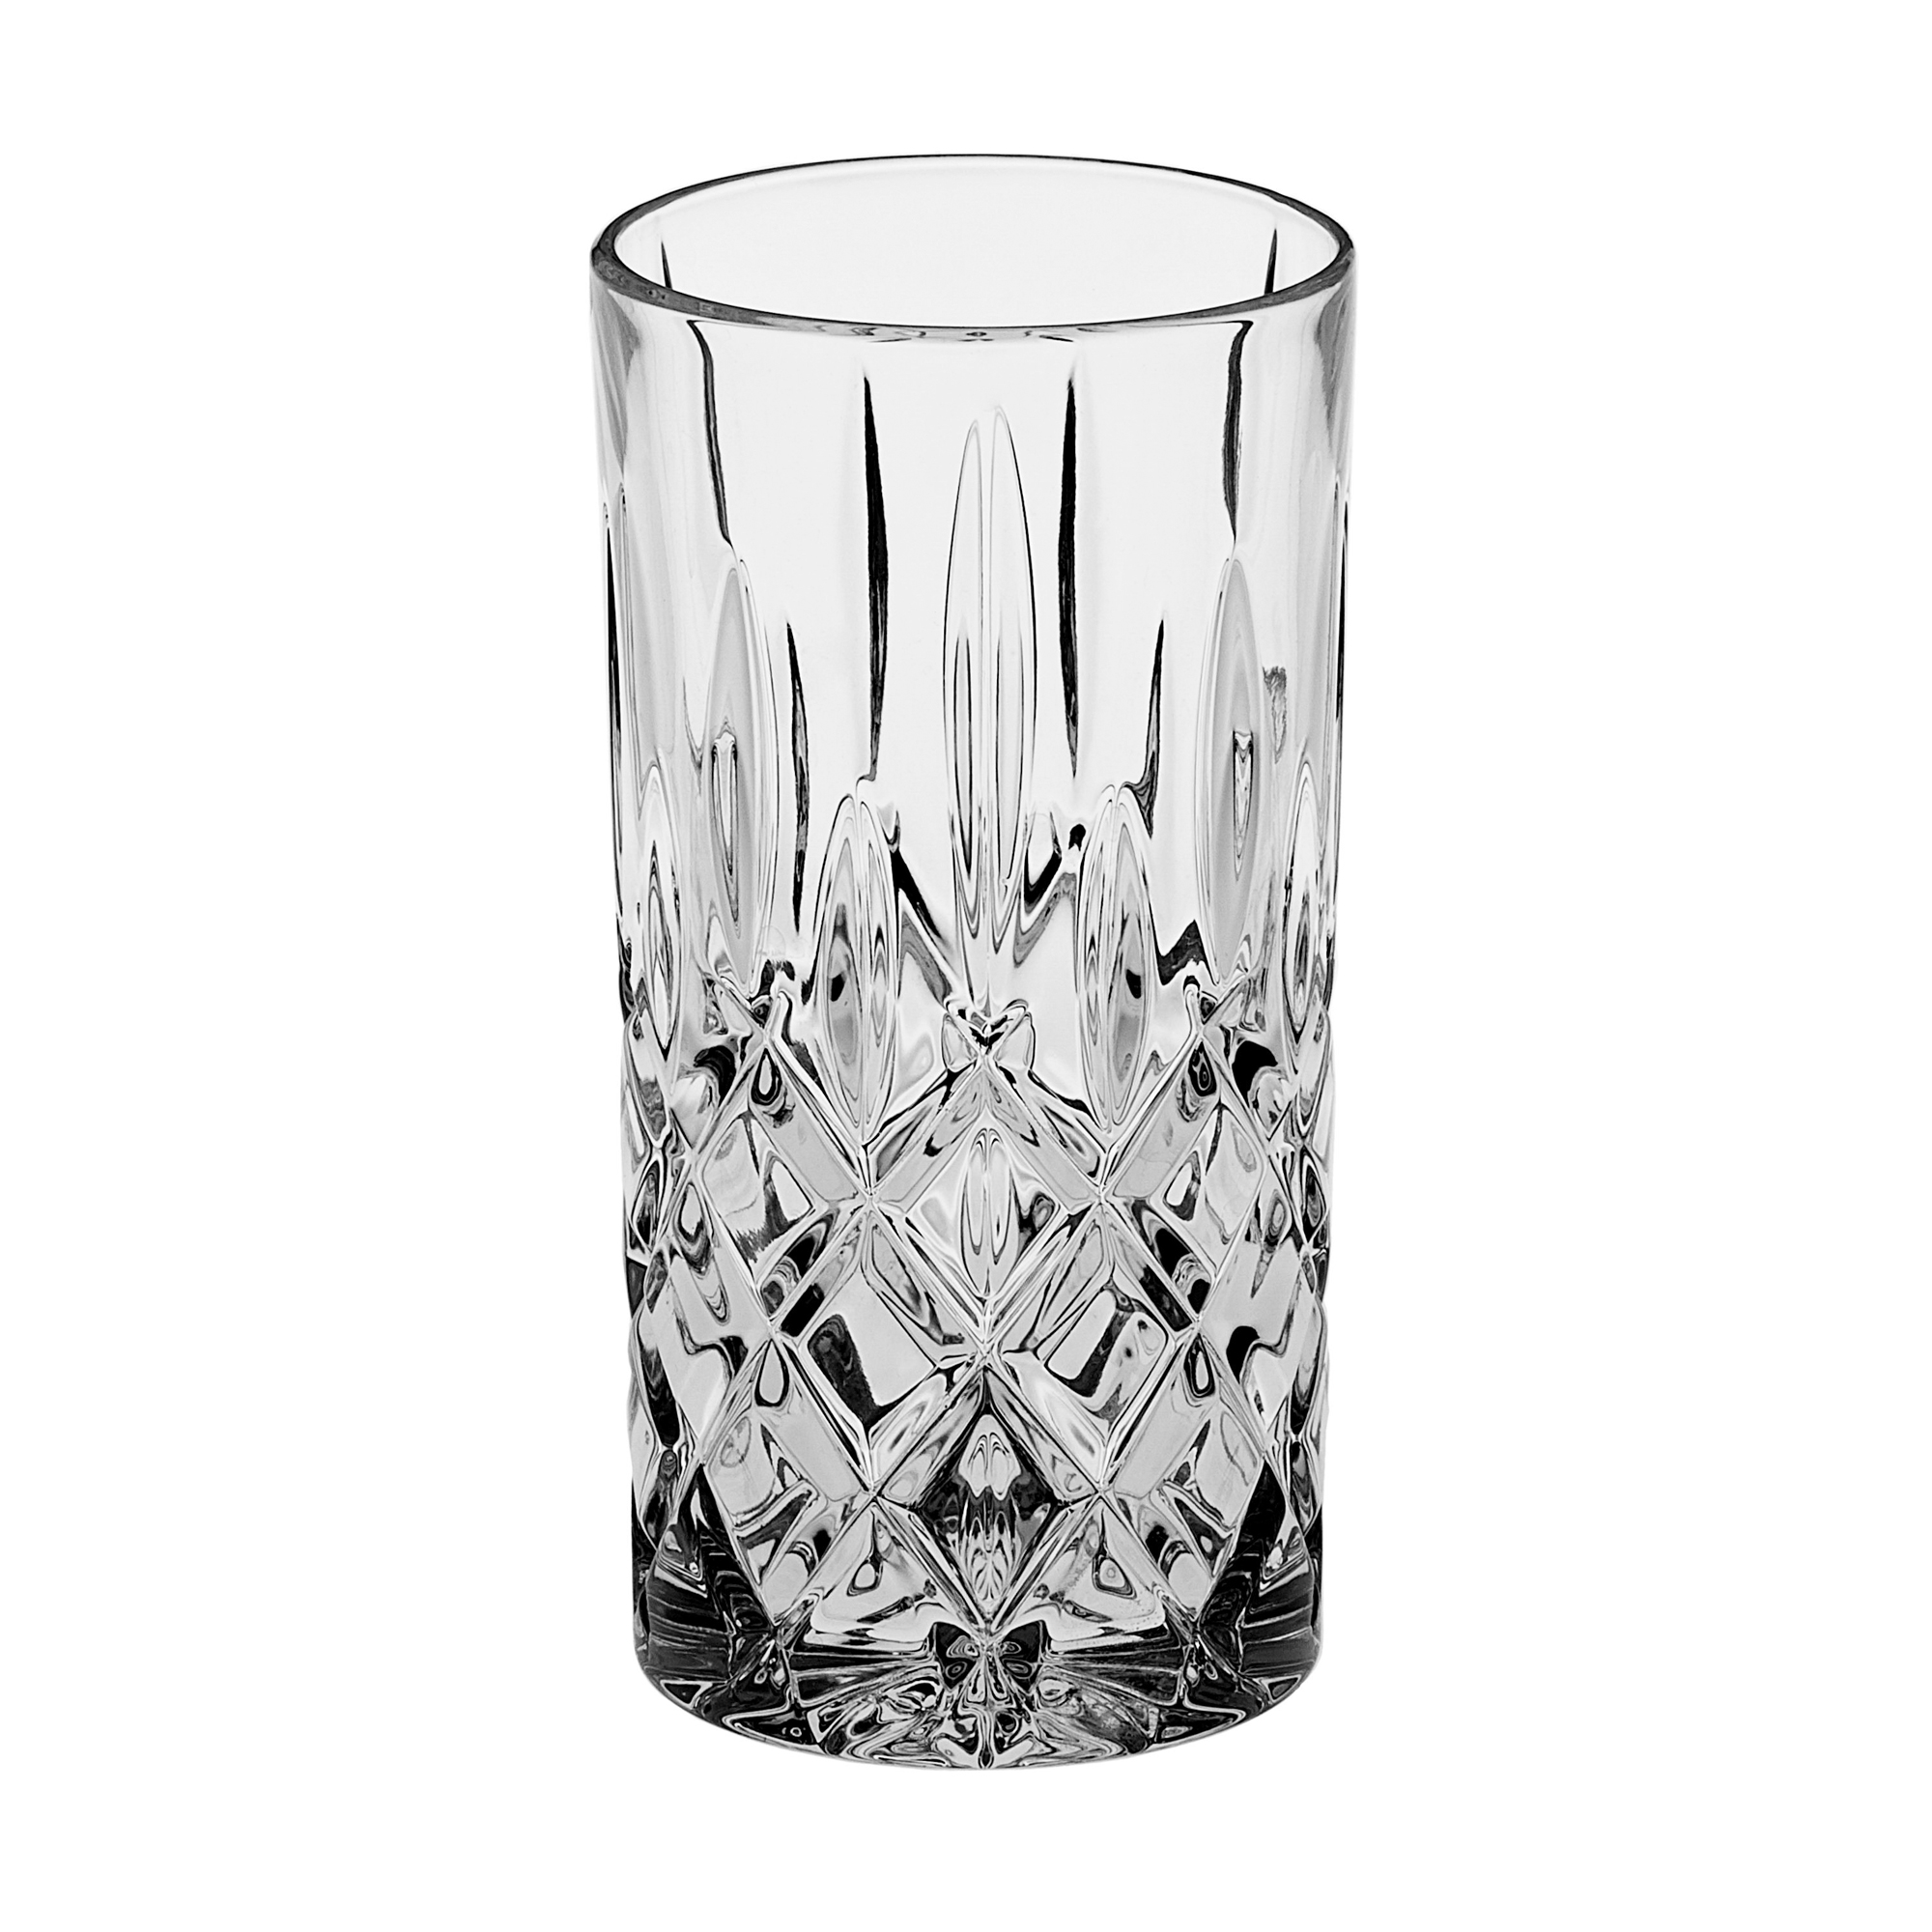 Набор стаканов Crystal bohemia as sheffield 6х350мл (990/21101/0/52820/380-609) набор стаканов для виски crystal bohemia as vibes 300мл 6шт 990 24520 0 24355 300 609